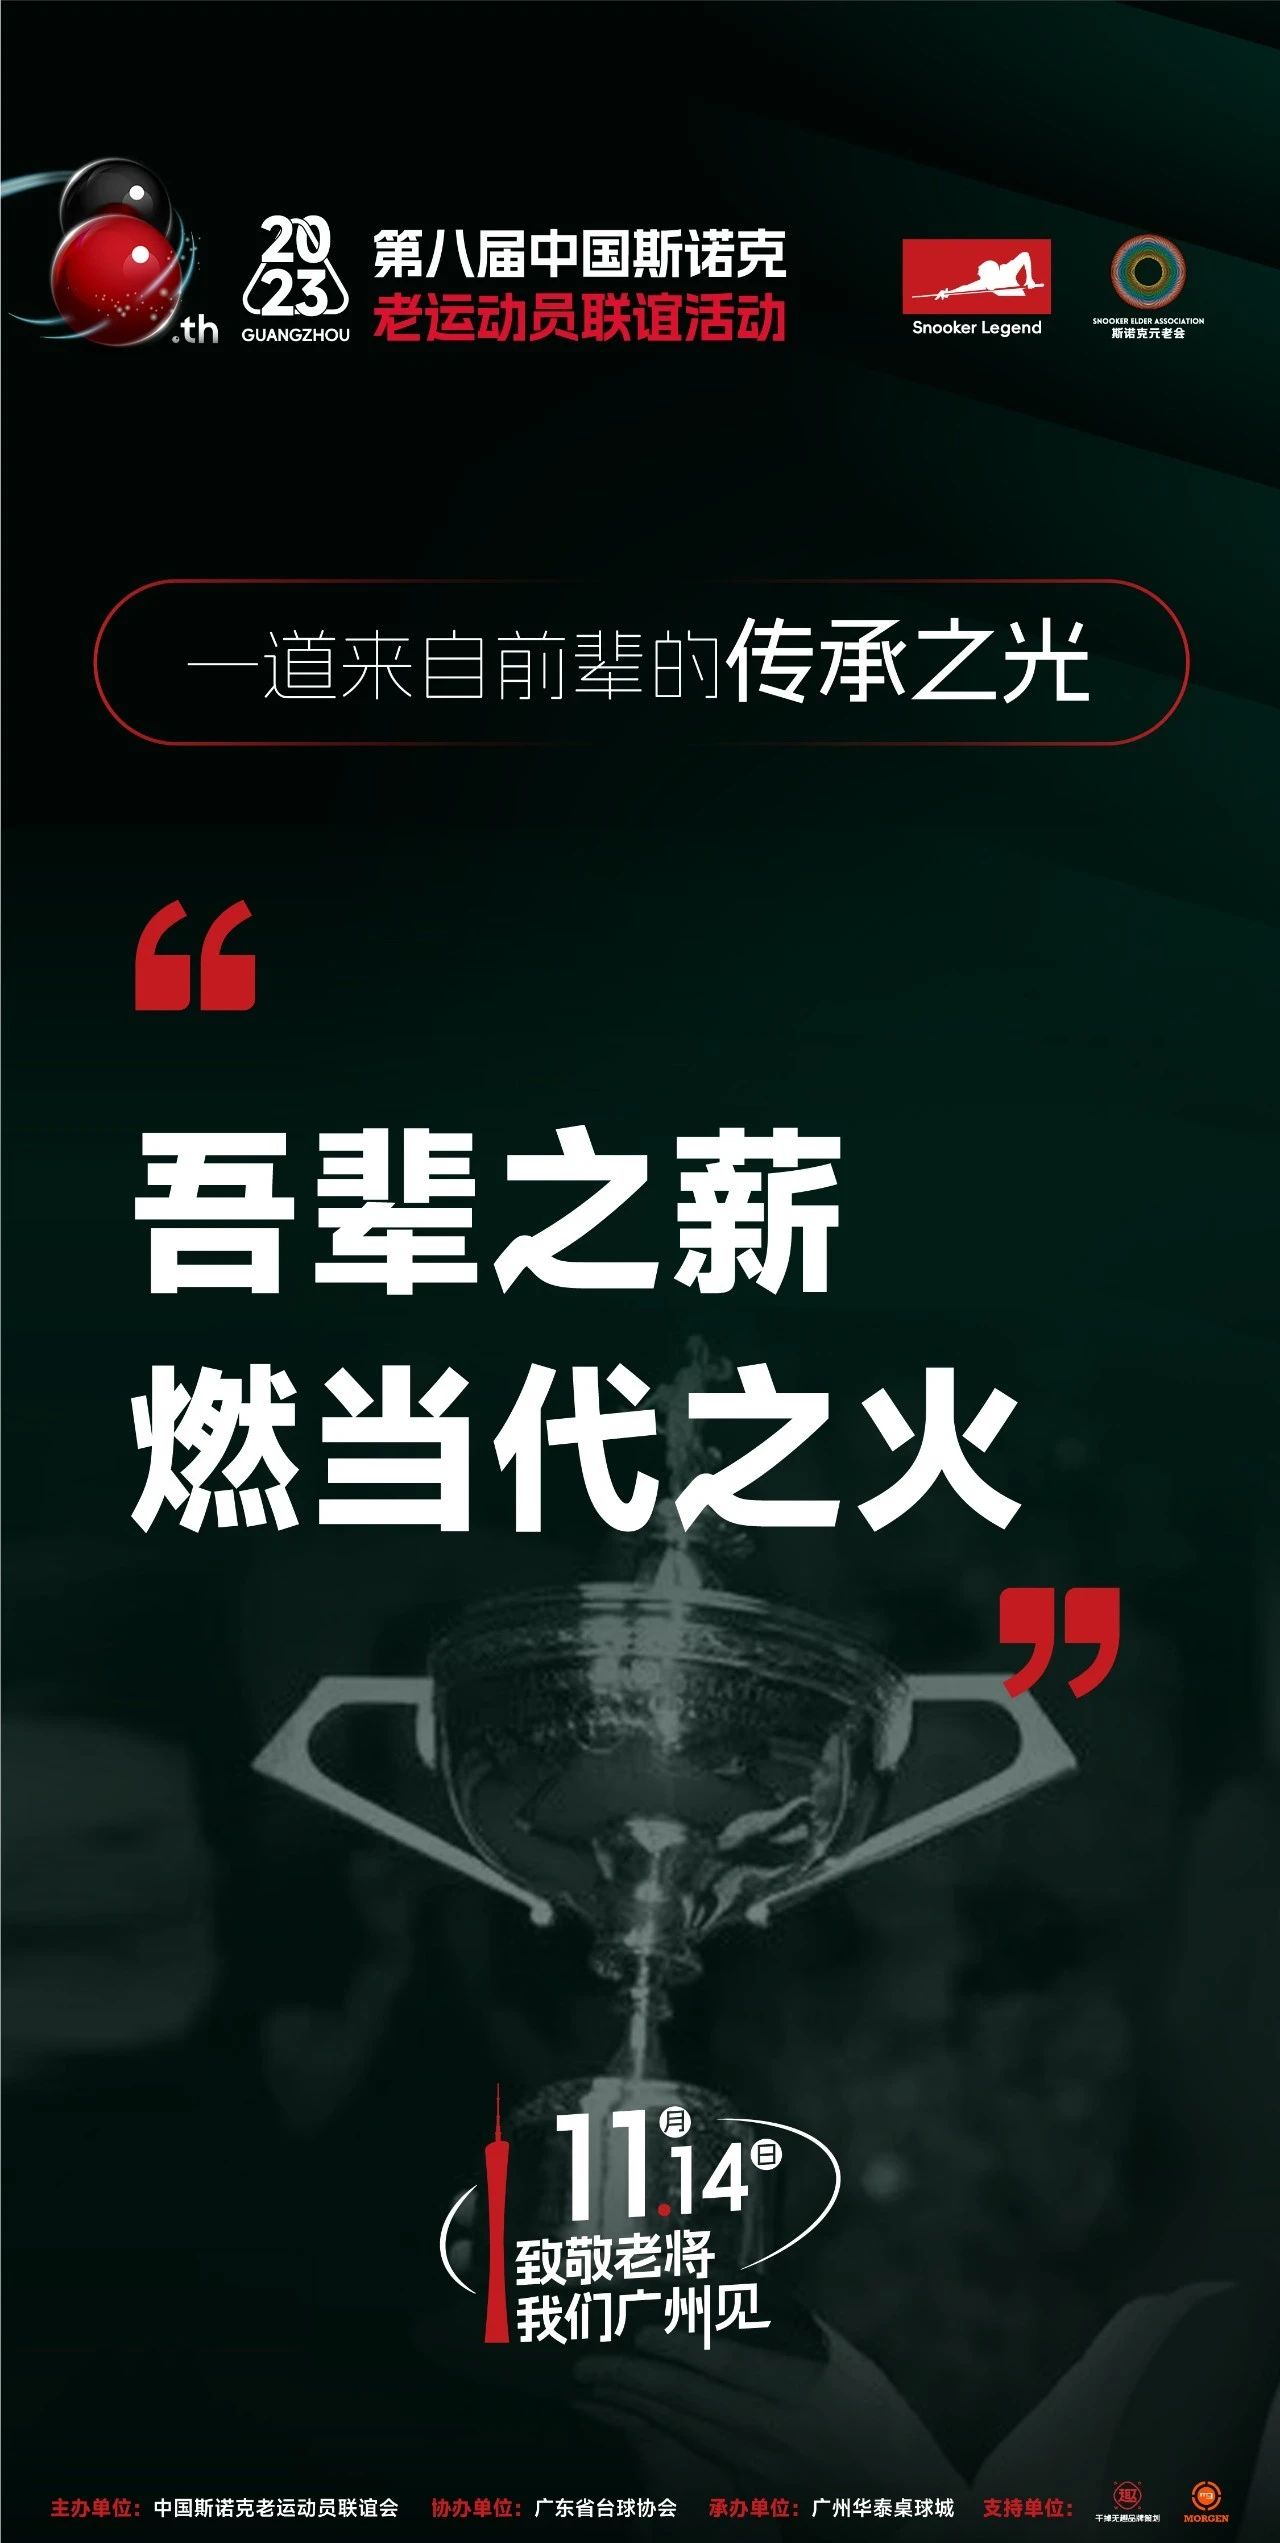 第八届中国斯诺克老运动员联谊活动 | 一道来自前辈的传承之光